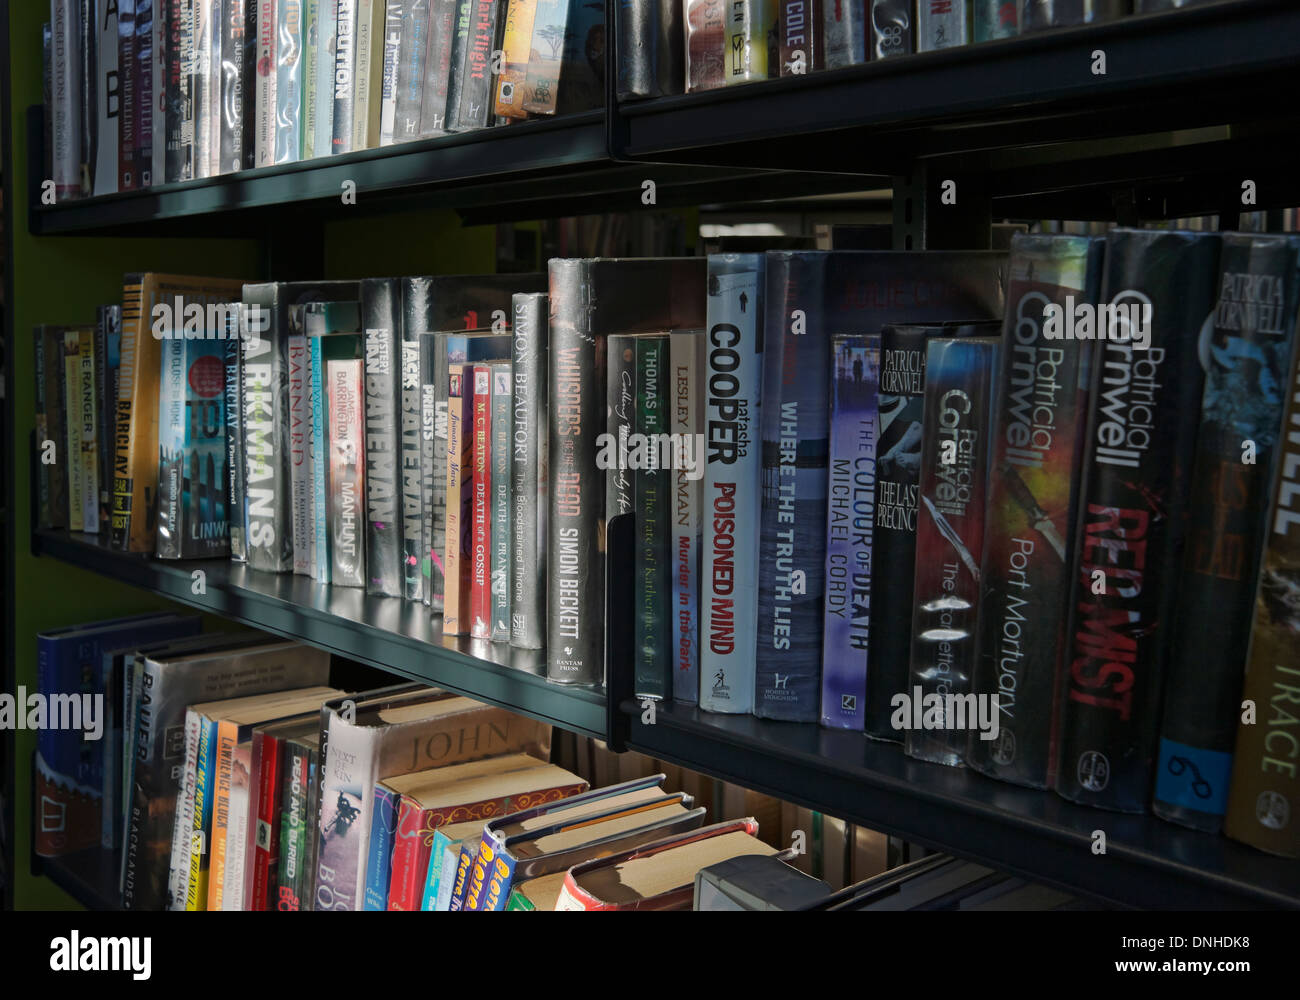 Nahaufnahme von Krimis Romane Bücher Buch auf Bücherregal Regale England Vereinigtes Königreich GB Großbritannien Stockfoto